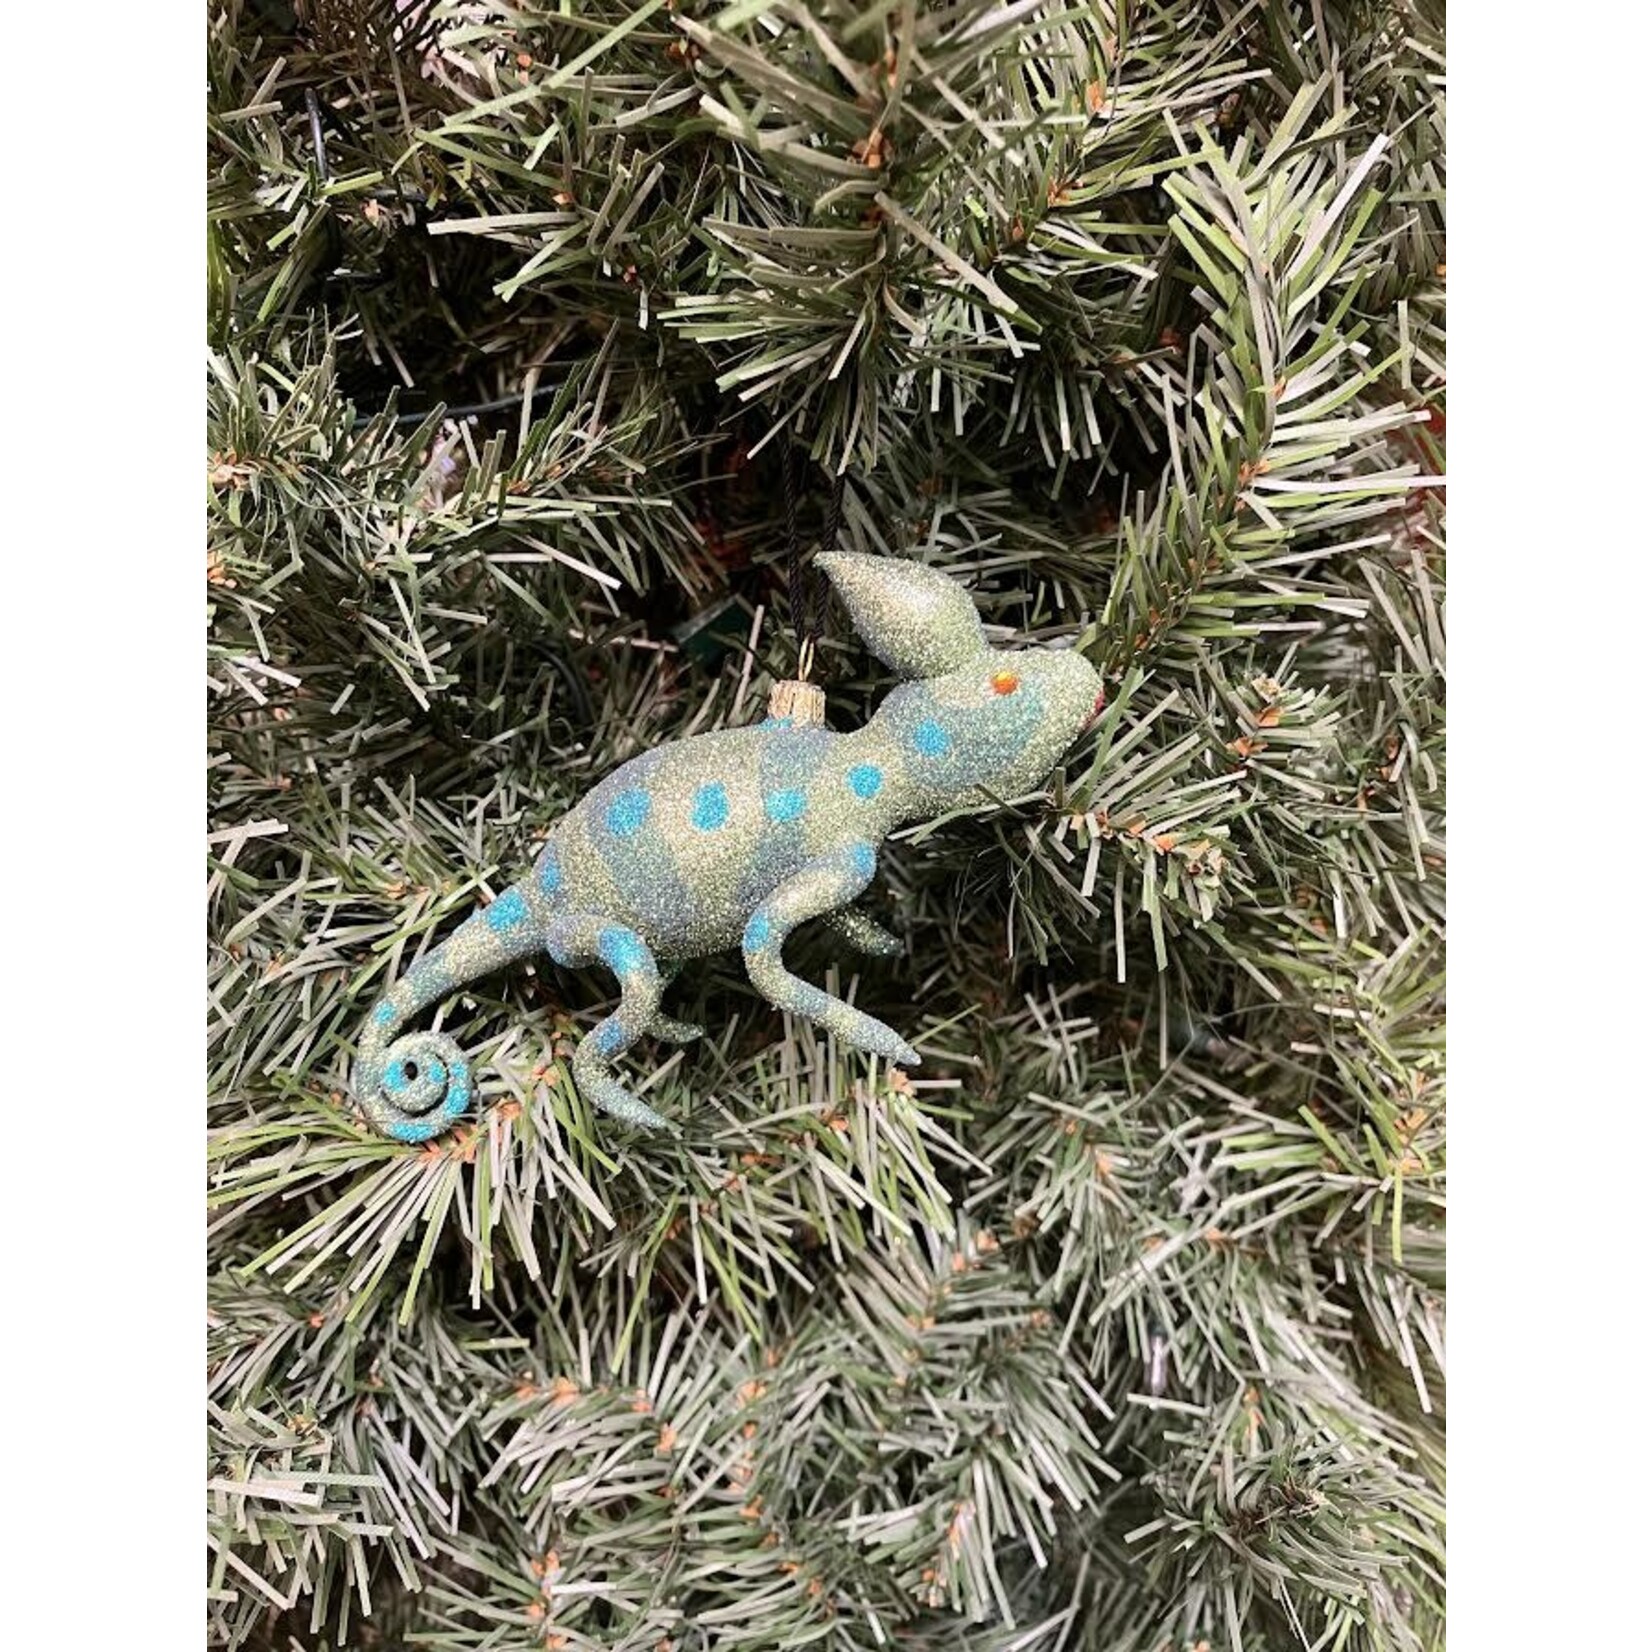 Mia Blue Chameleon Ornament